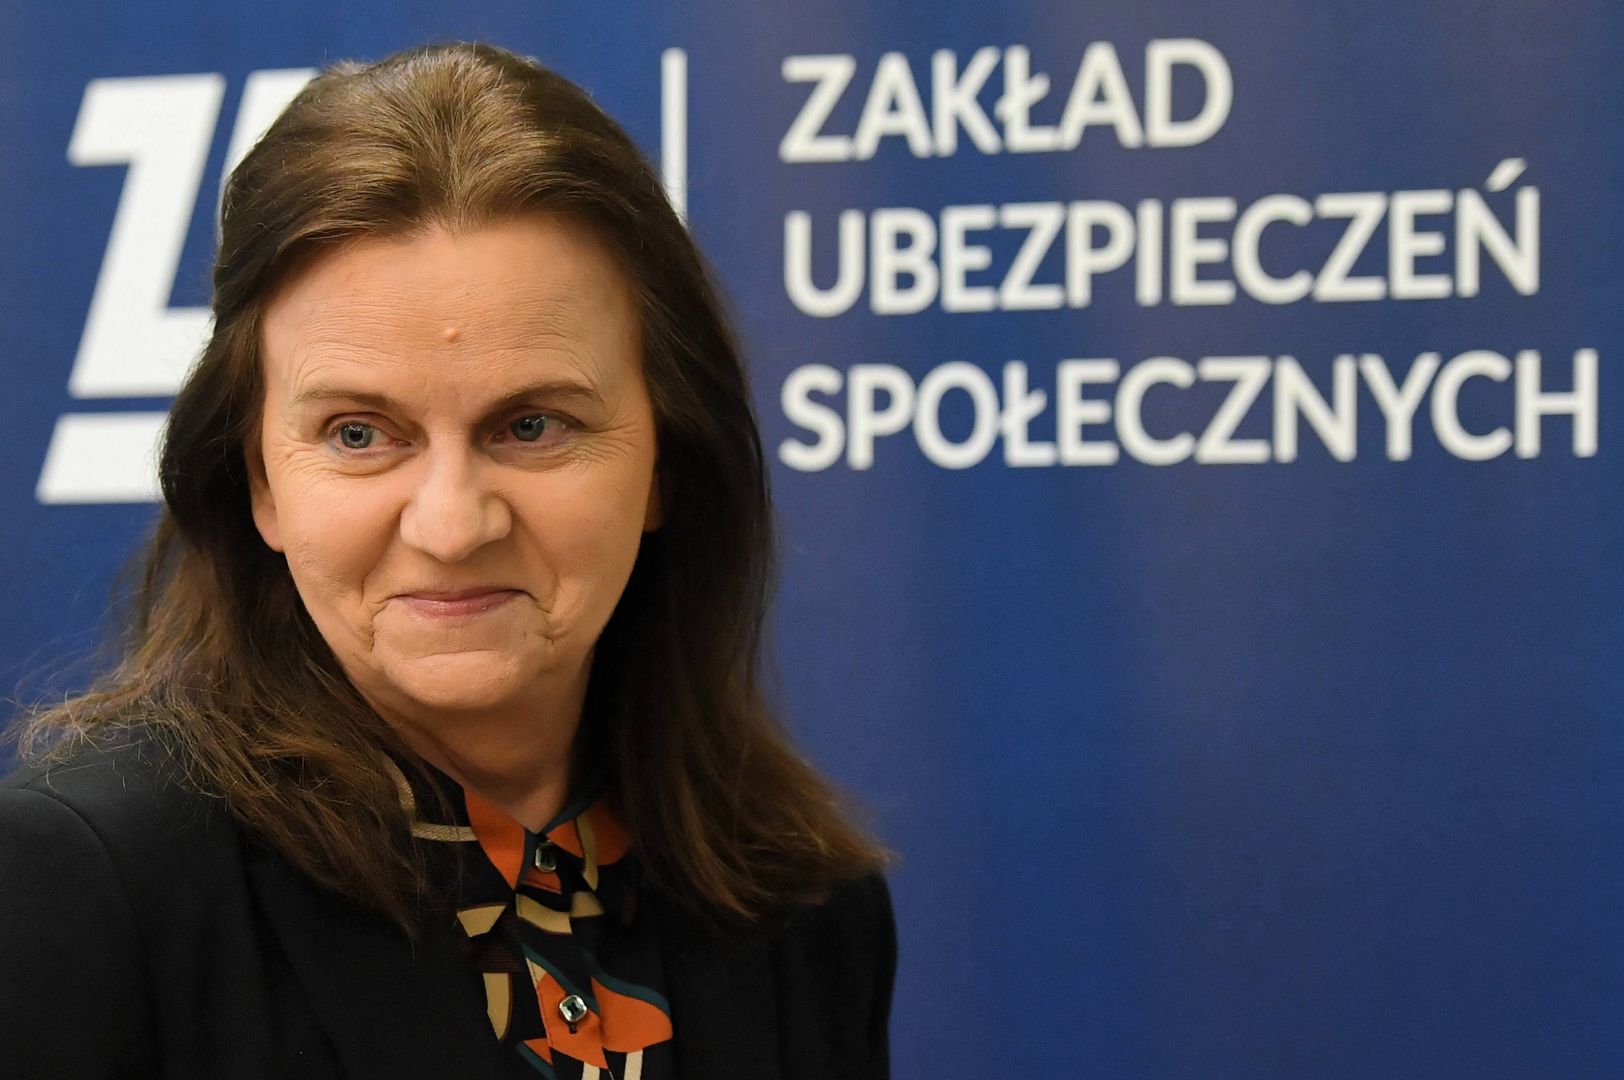 Prezes ZUS, Gertruda Uścińska zapewnia, że prawo do świadczeń i ciągłość ubezpieczenia będą zachowane